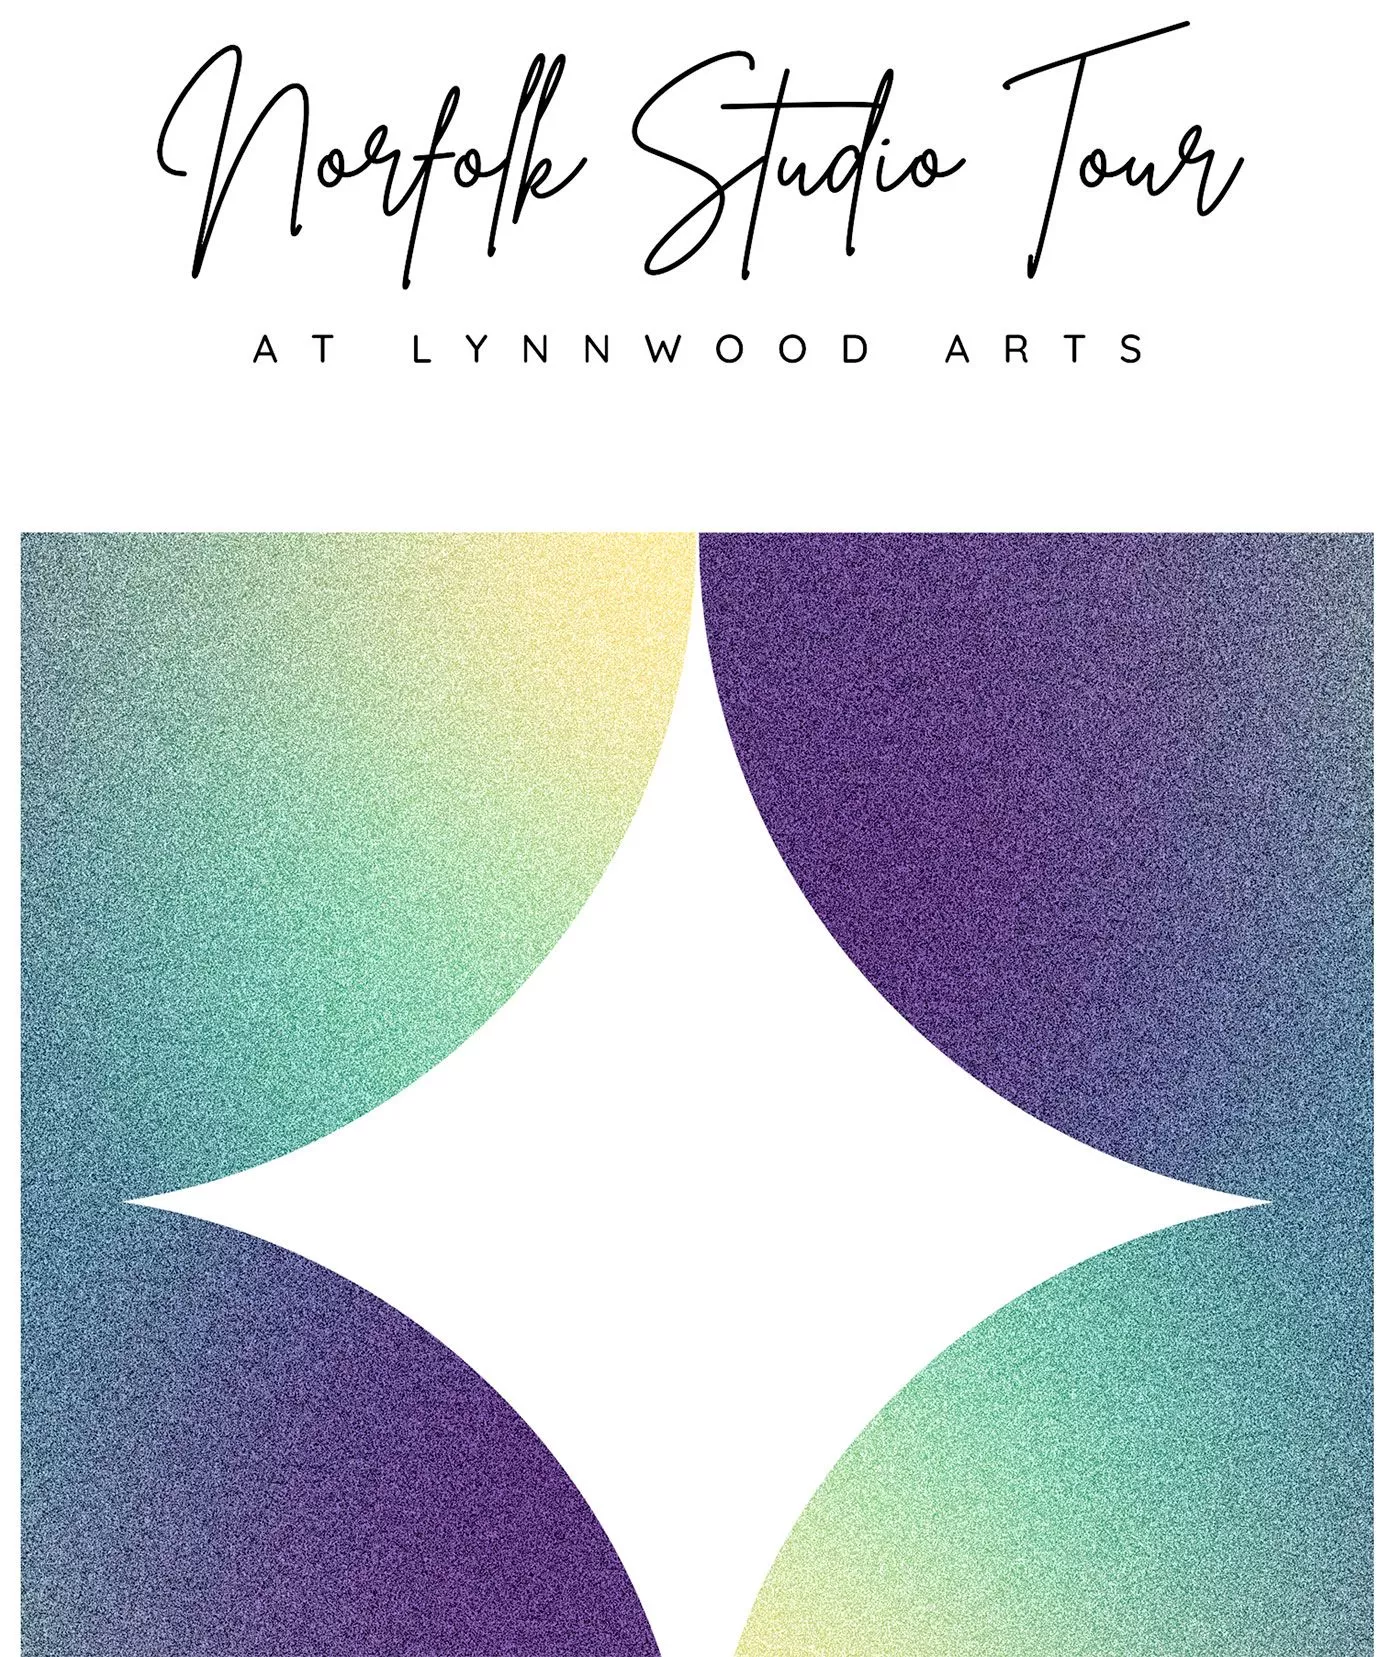 Norfolk Studio Tour